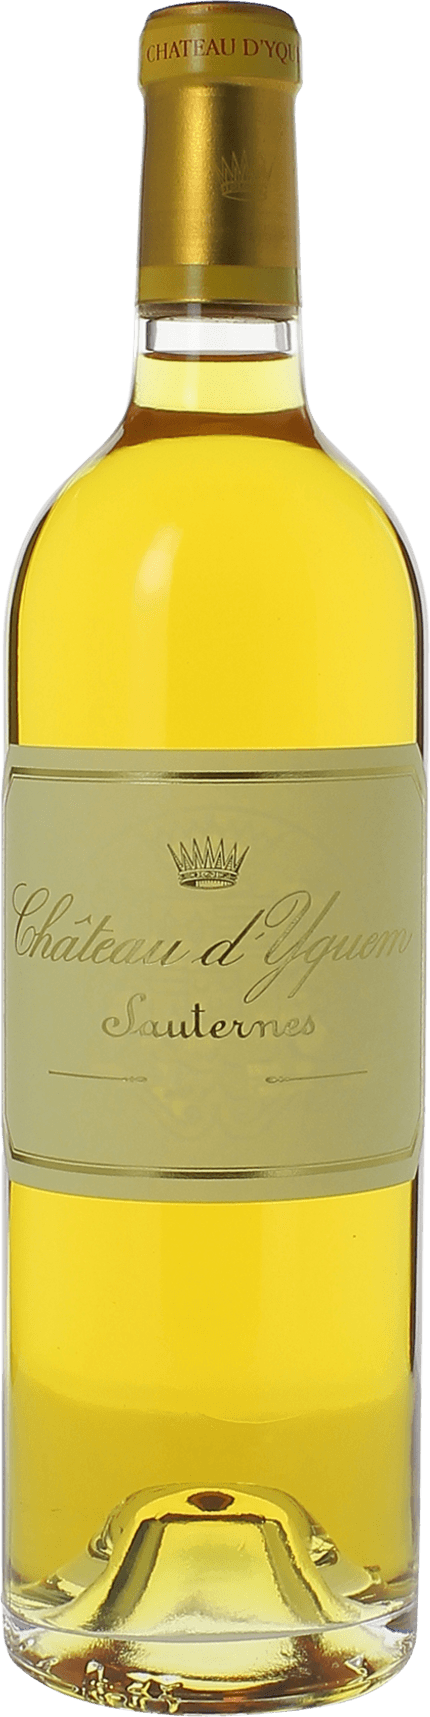 Yquem 2003 1er Grand cru class Sauternes, Bordeaux blanc